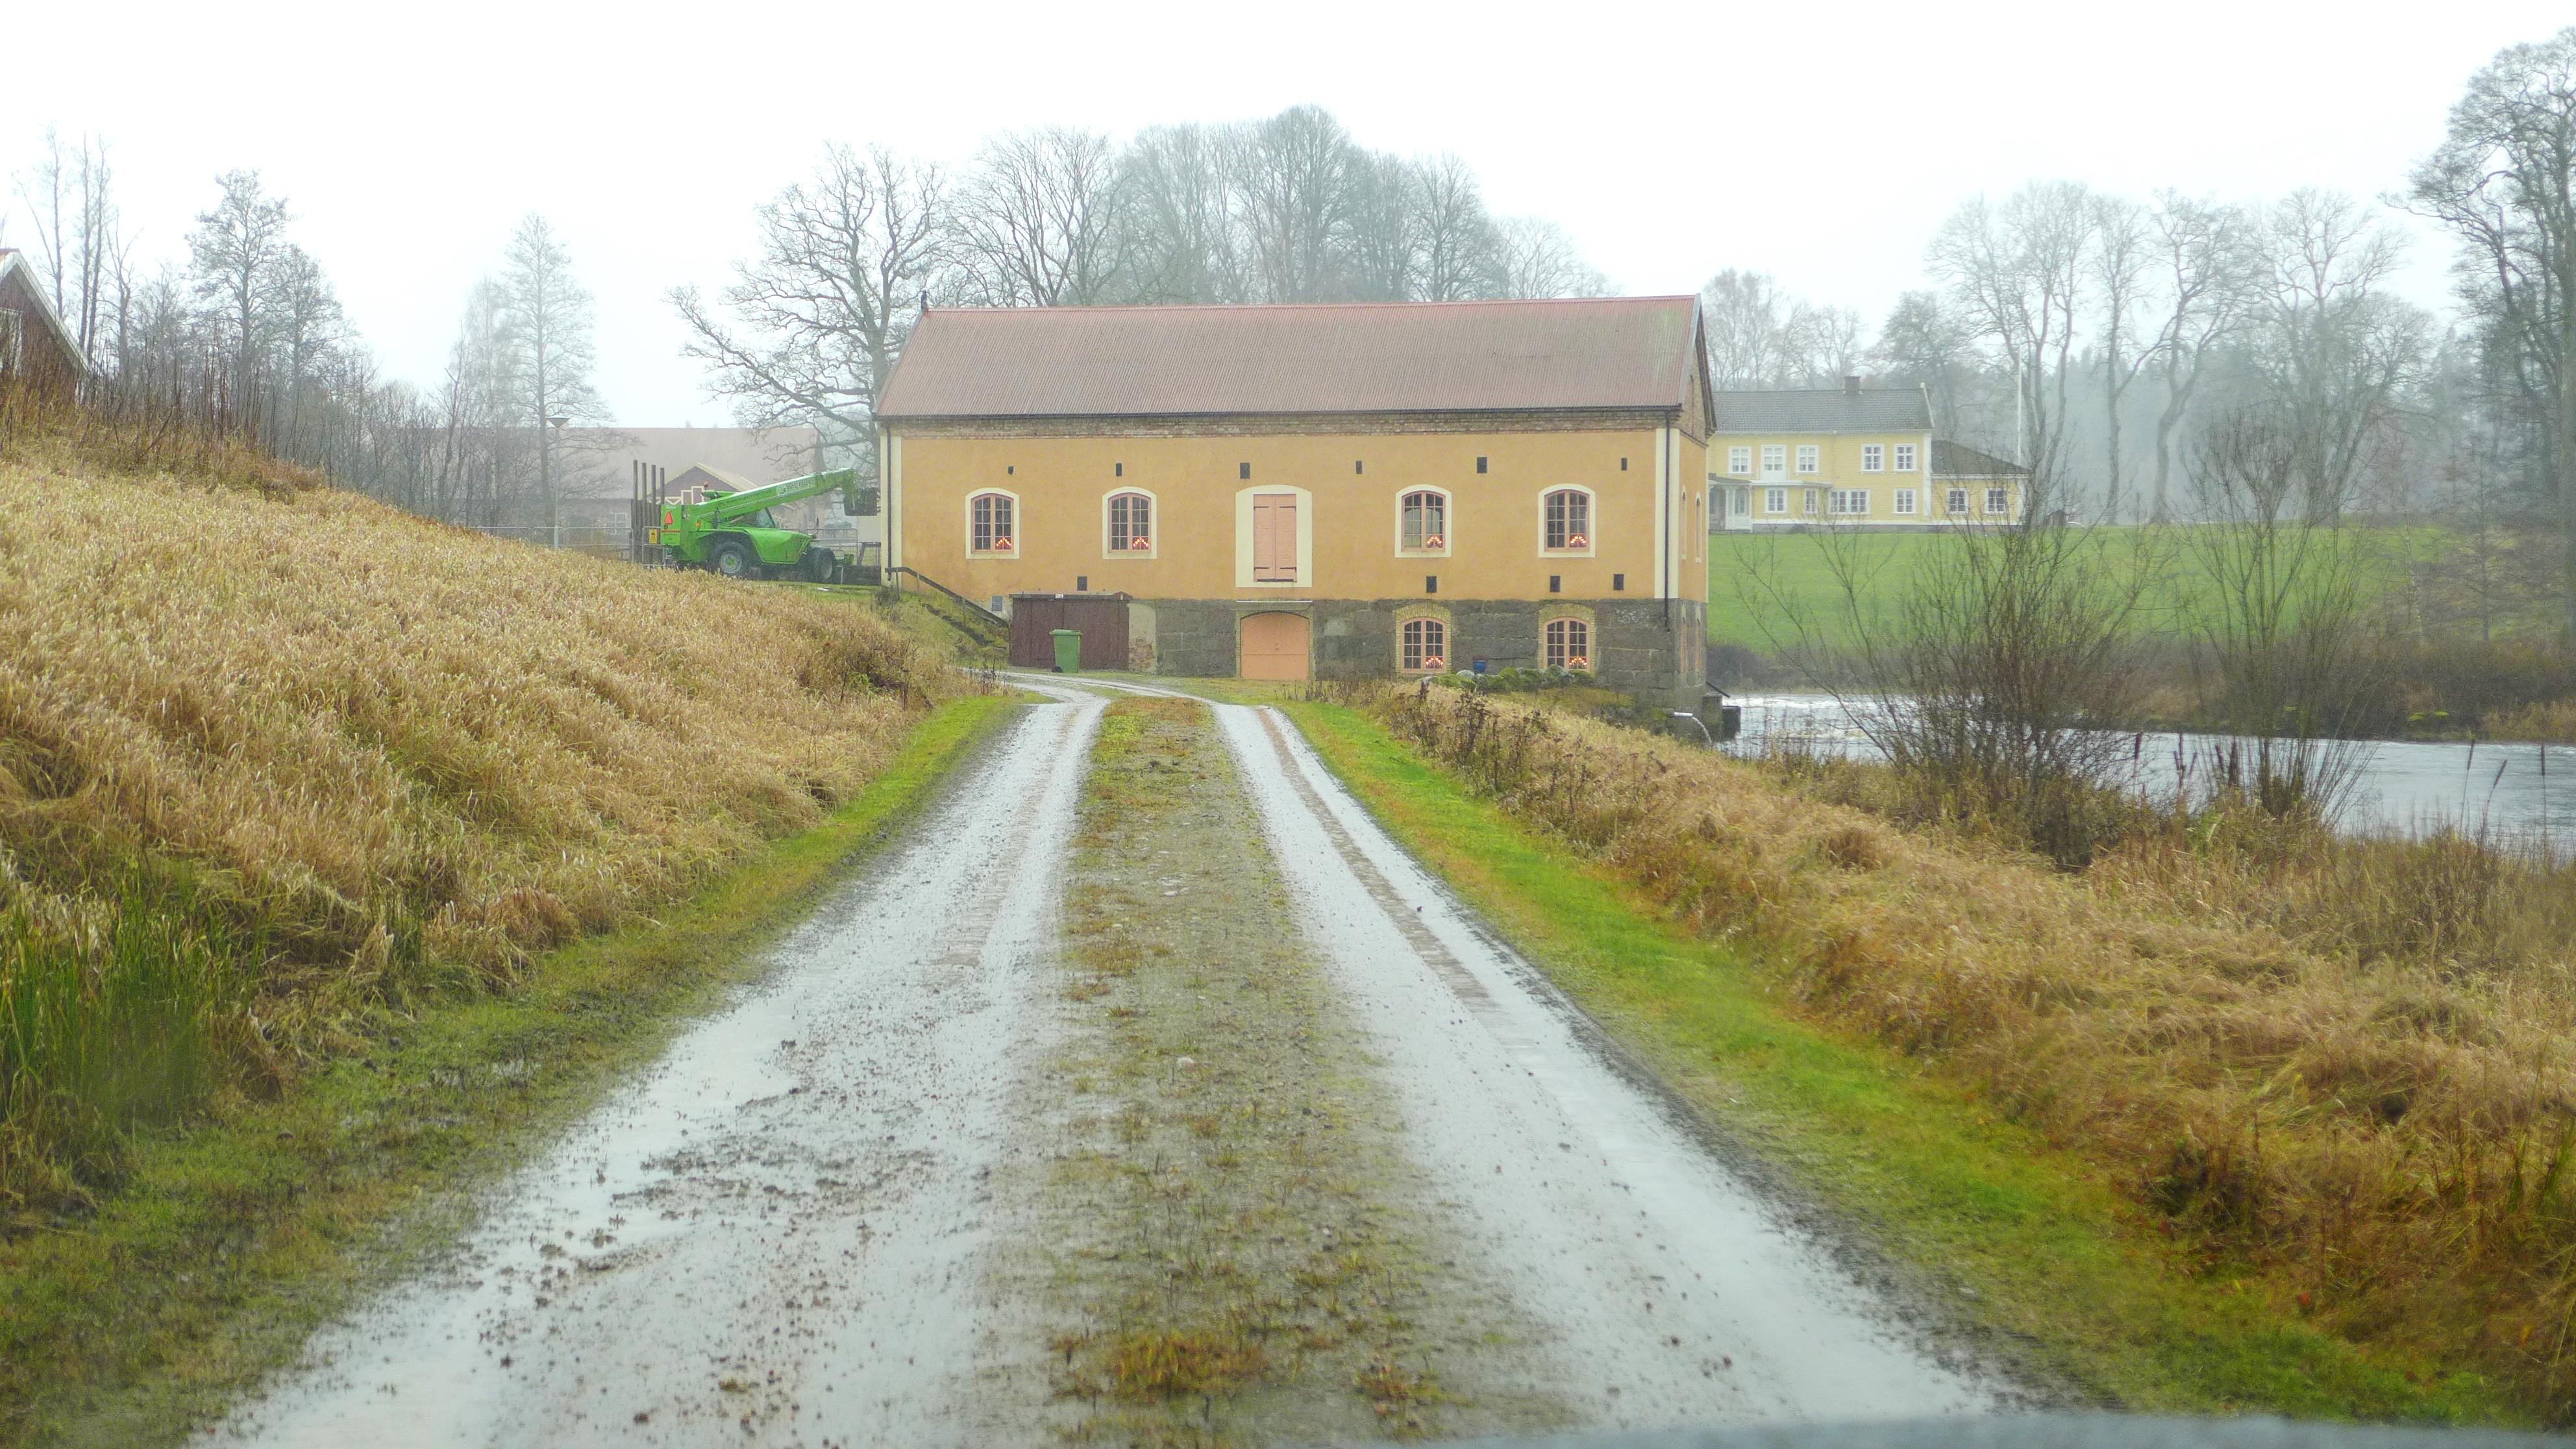 Hjultorps kvarn ligger i Vårgårda kommun. Den uppfördes i sitt nuvarande utseende troligen under mitten av 1800-talet.